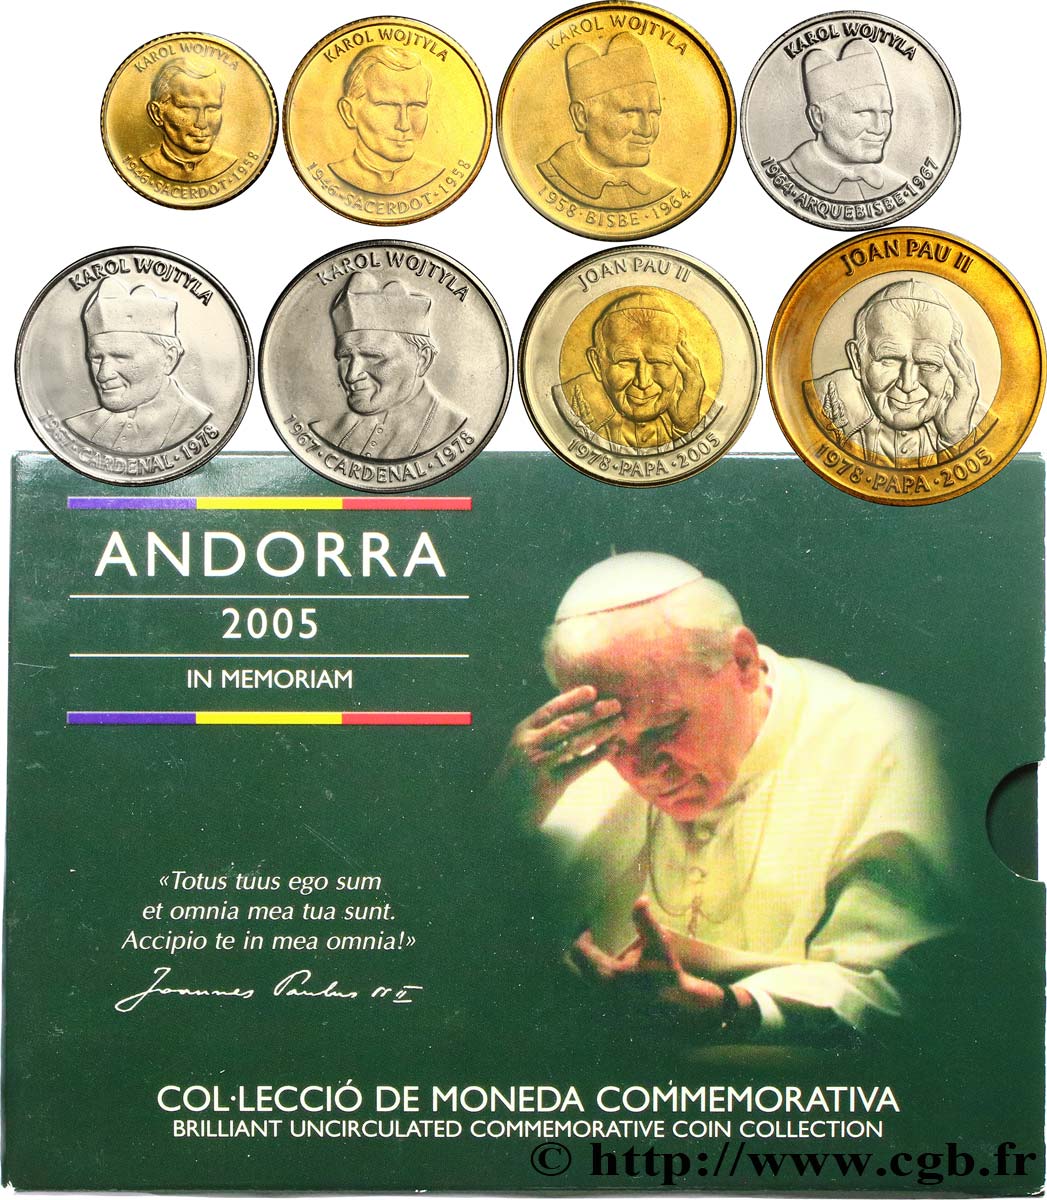 ANDORRA SÉRIE Diner BRILLANT UNIVERSEL - Série commémorative en l’honneur du pape Jean-Paul II 2005  BU 